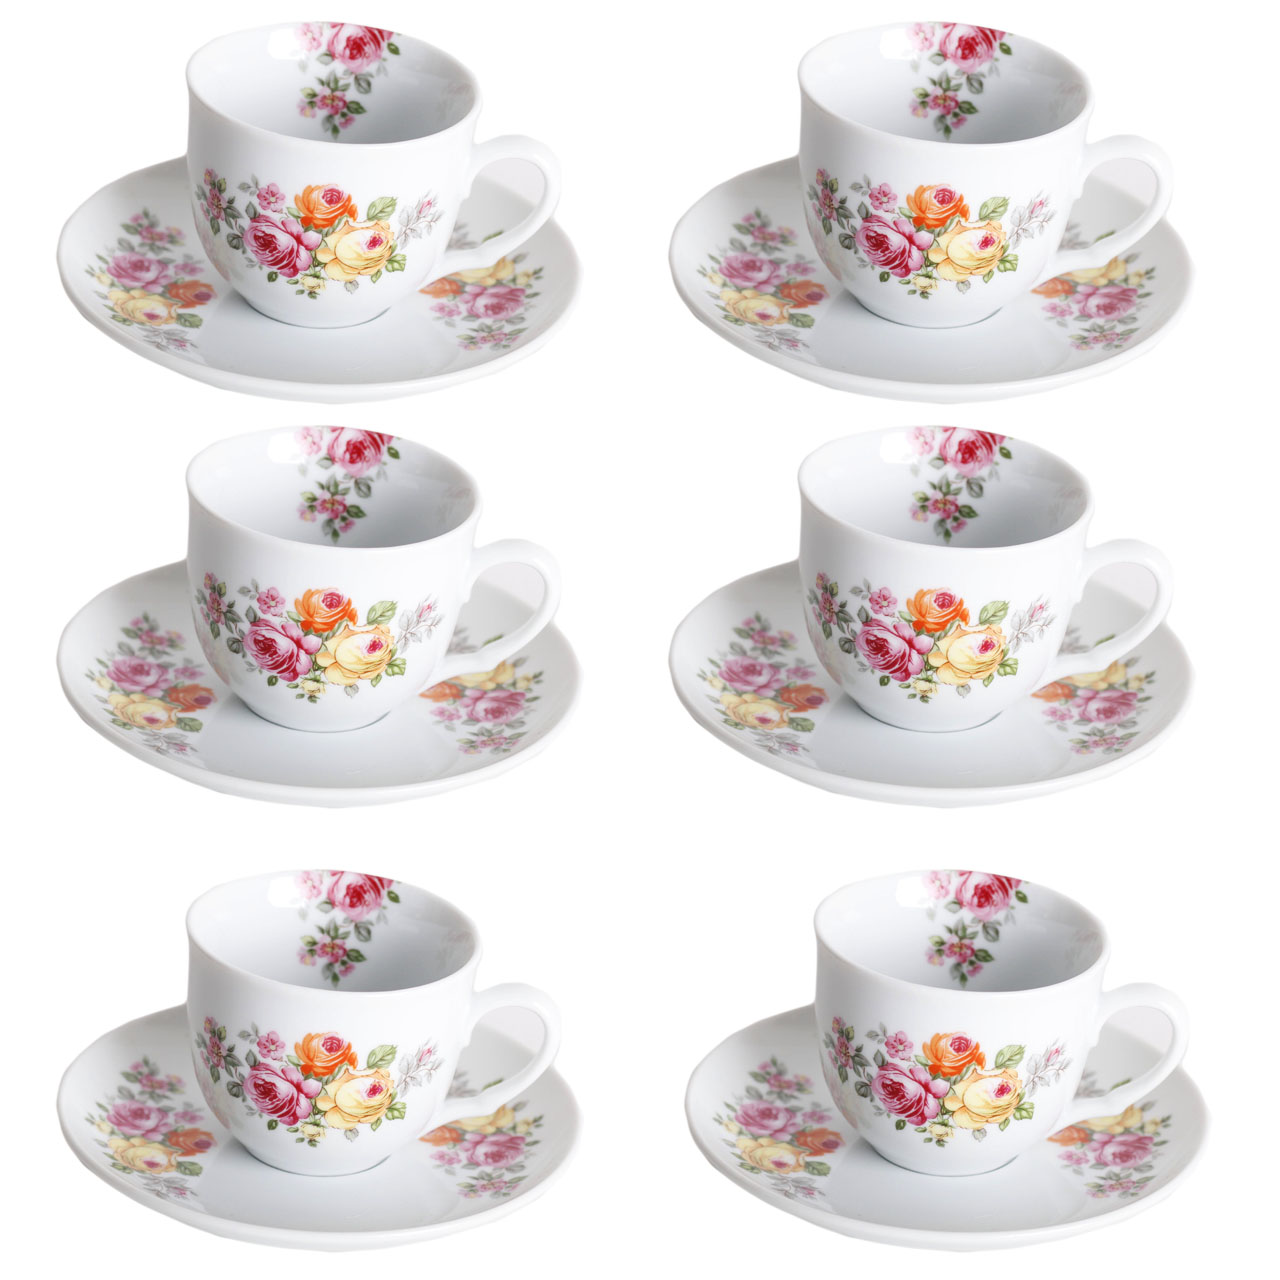 سرویس چای خوری 12 پارچه طرح Floral